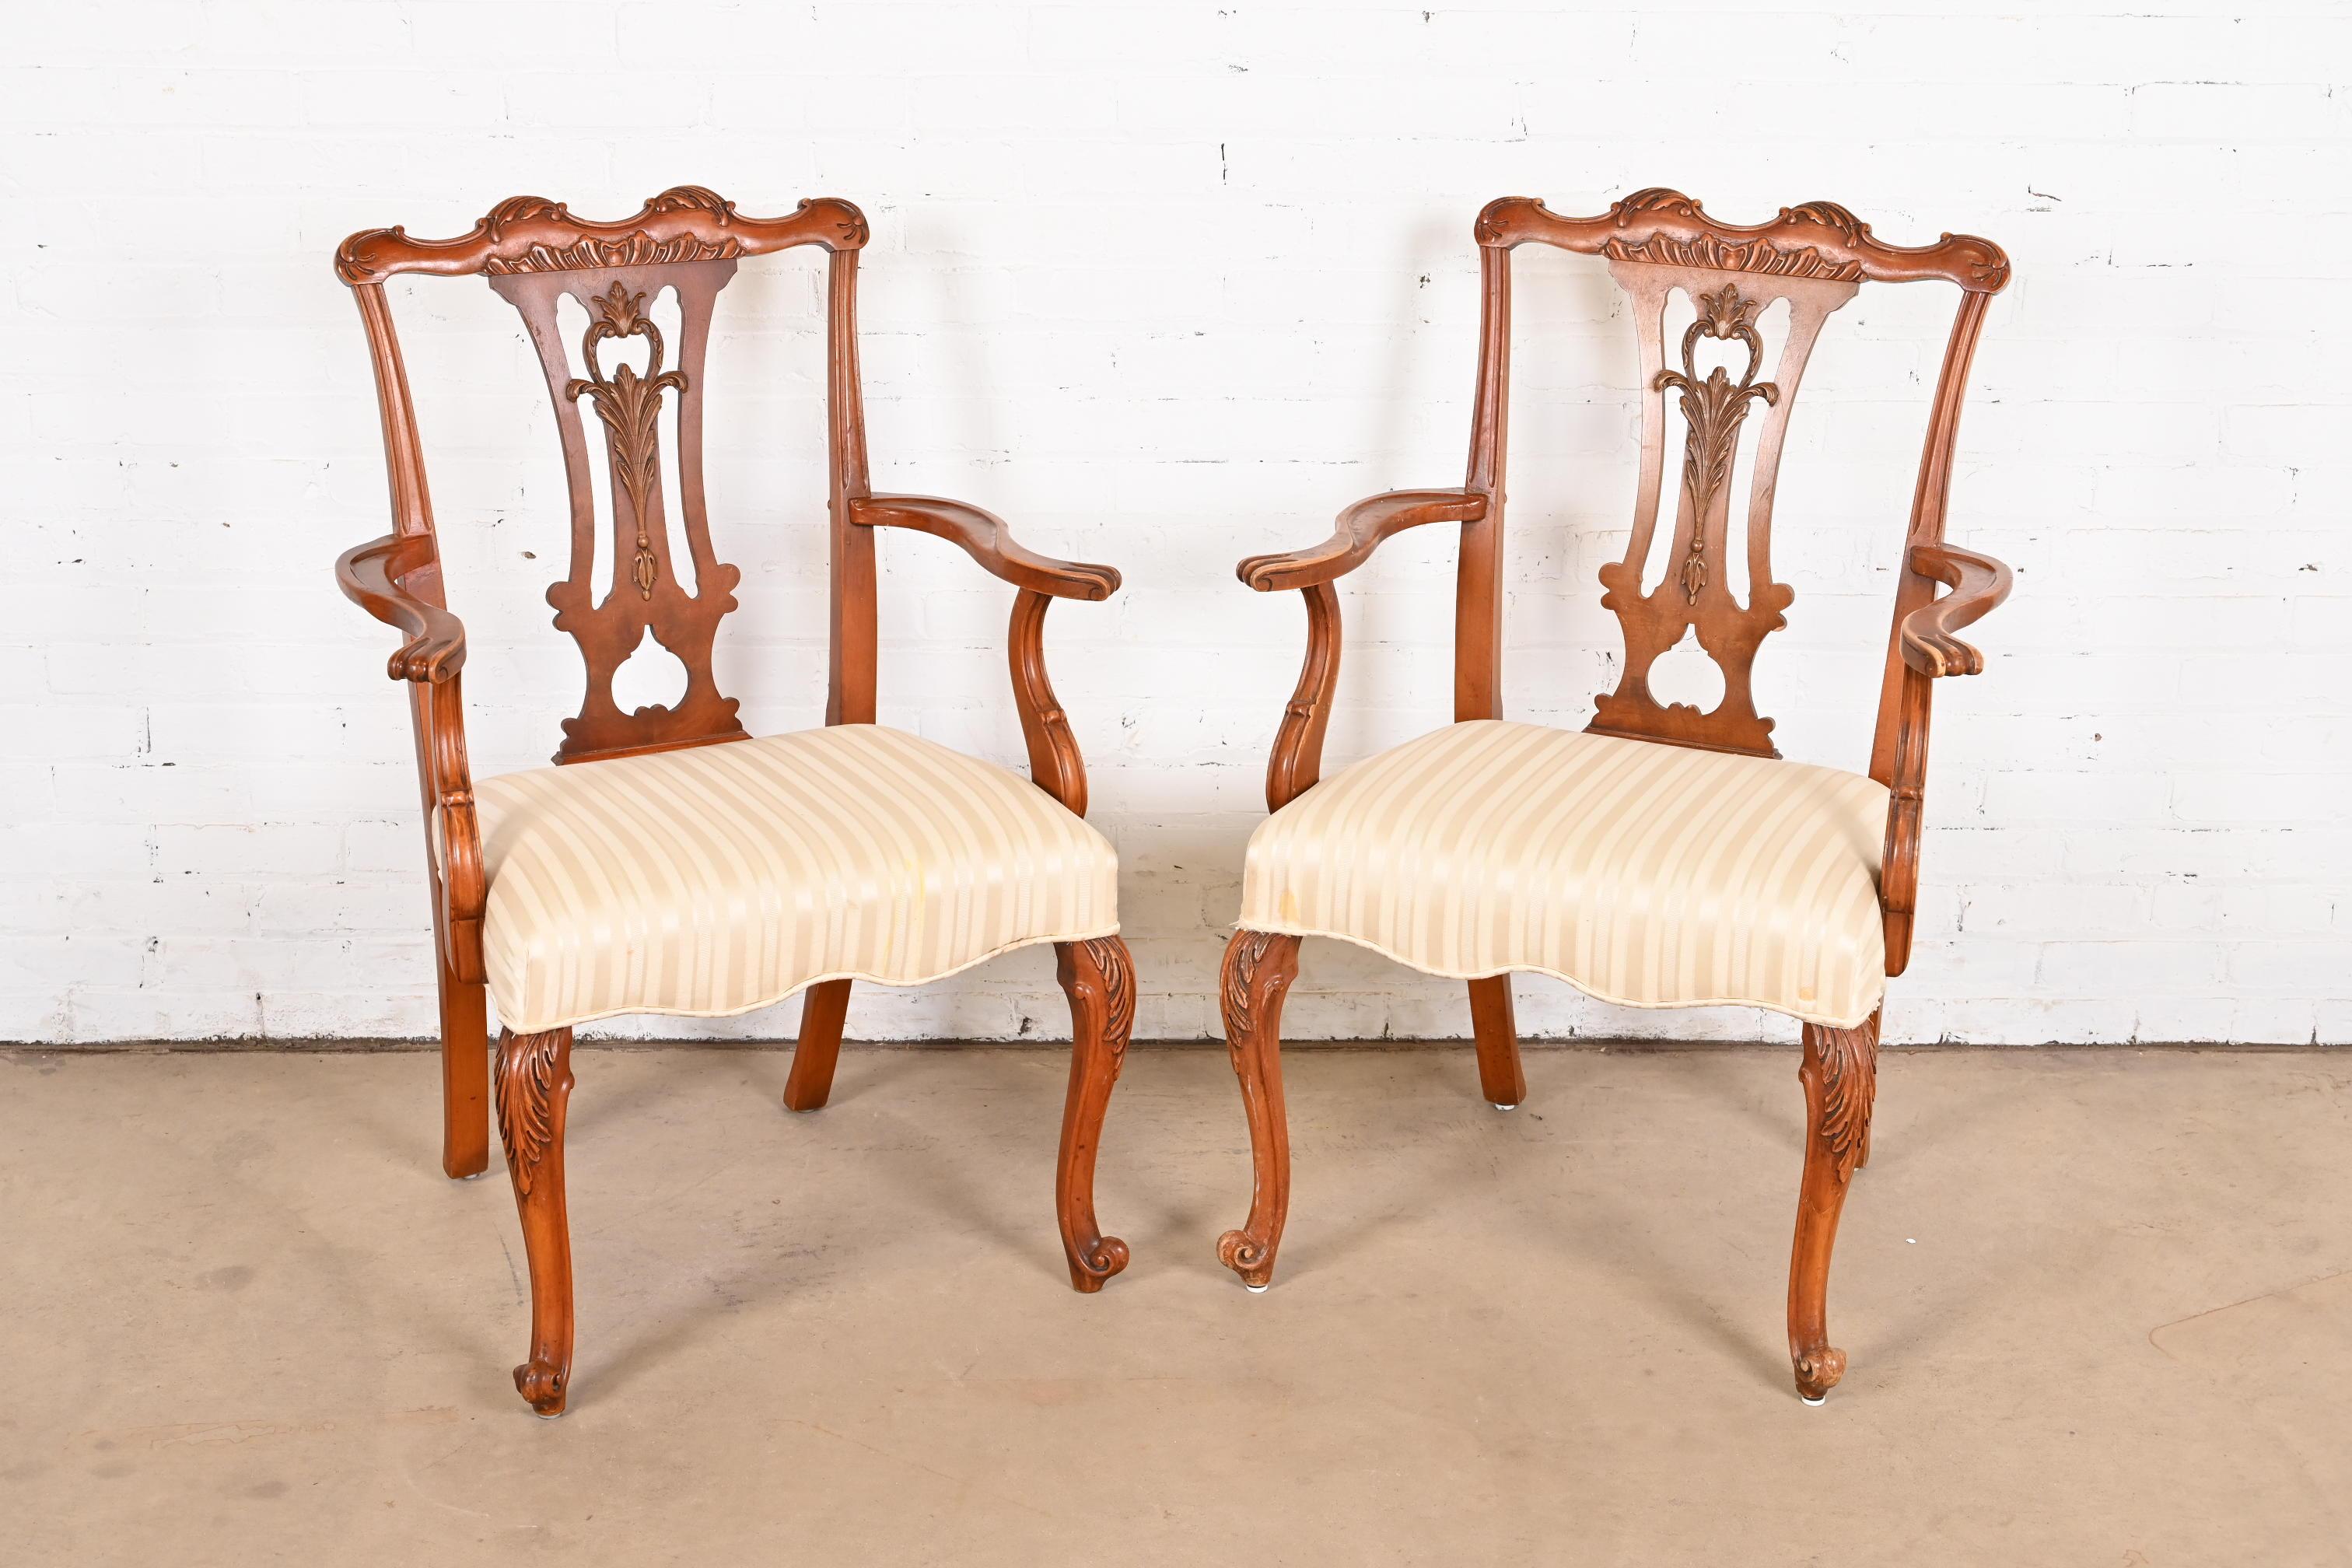 Magnifique paire de fauteuils de salle à manger de style provincial français Louis XV.

Par Romweber

États-Unis, vers 1920

Magnifique bois d'acacia exotique sculpté, avec sièges rembourrés.

Dimensions : 28 